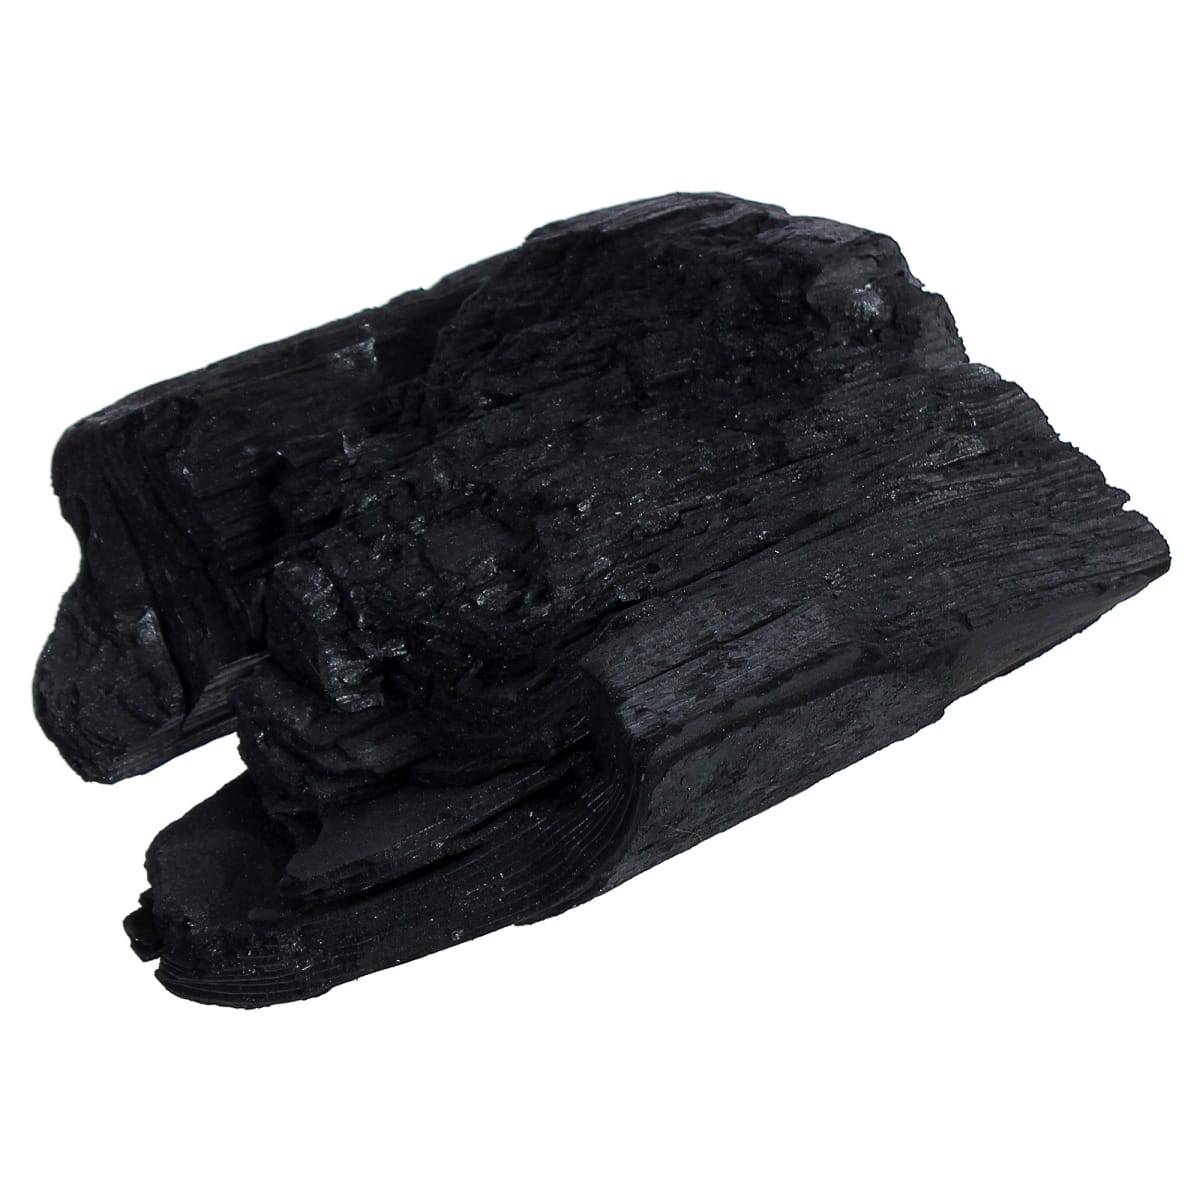 Анализ каменного угля, как источника попадания токсичных соединений в организм человека и сельскохозяйственных животных